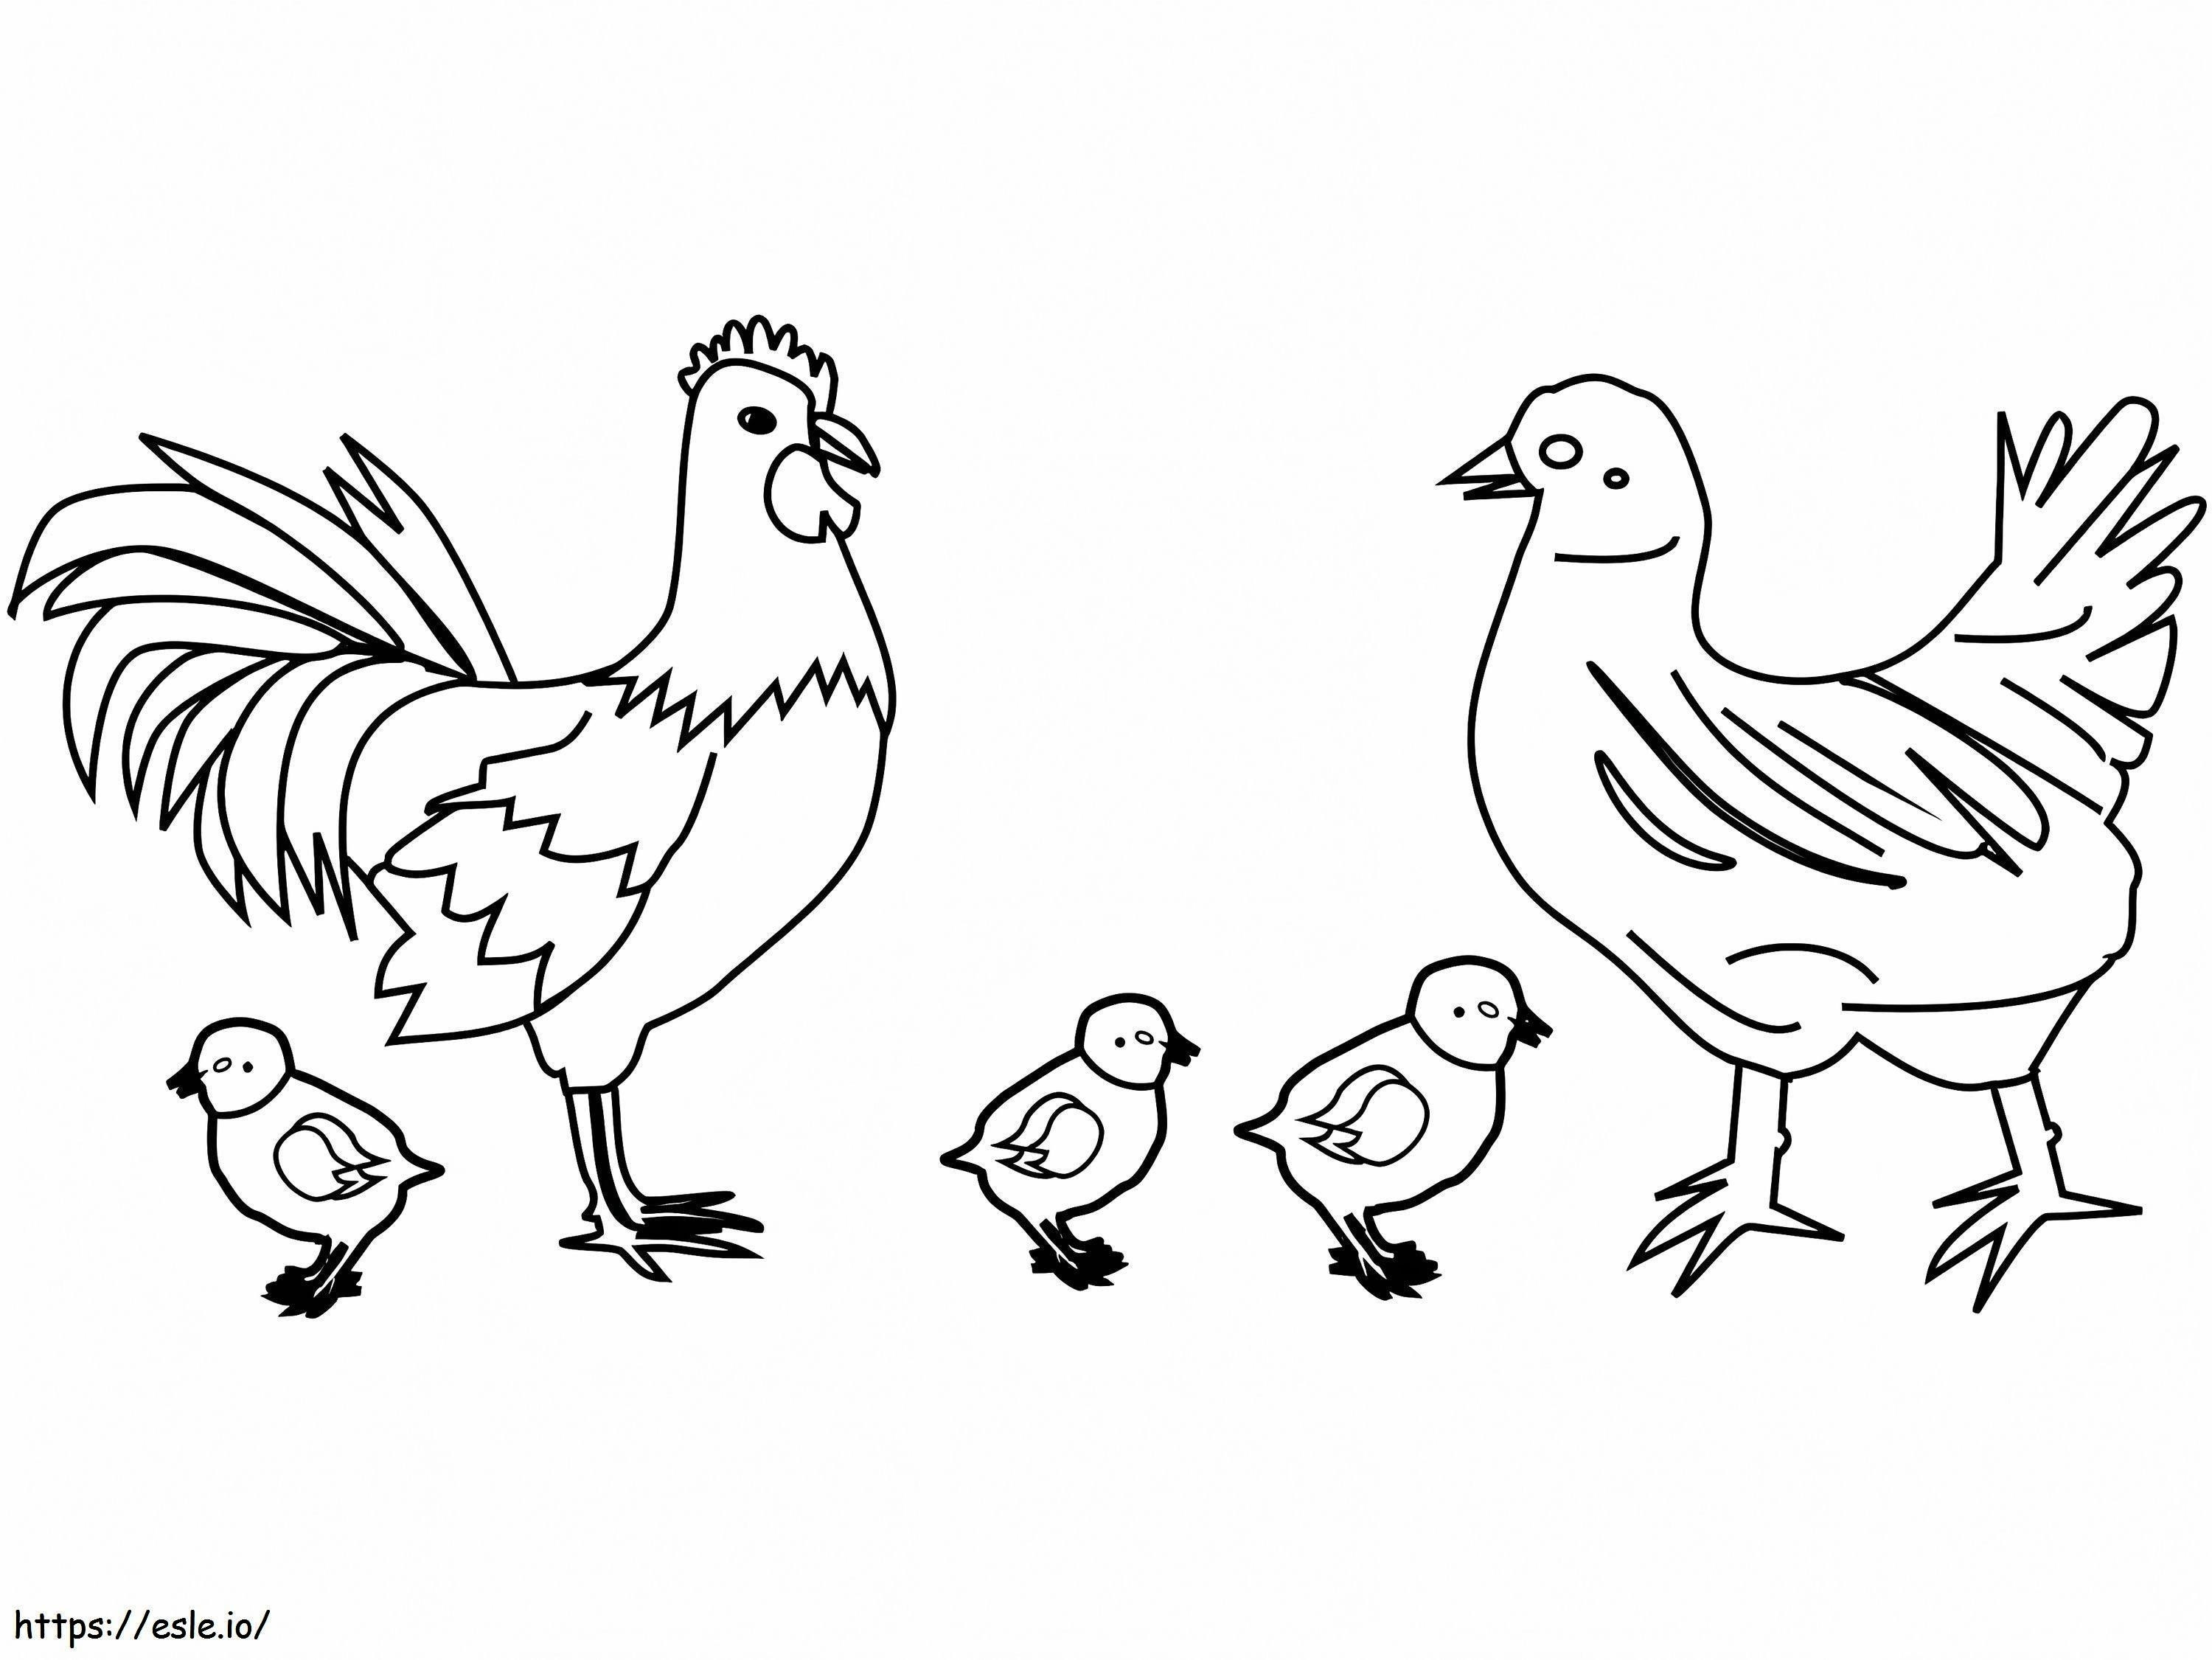 Famiglia di polli da colorare